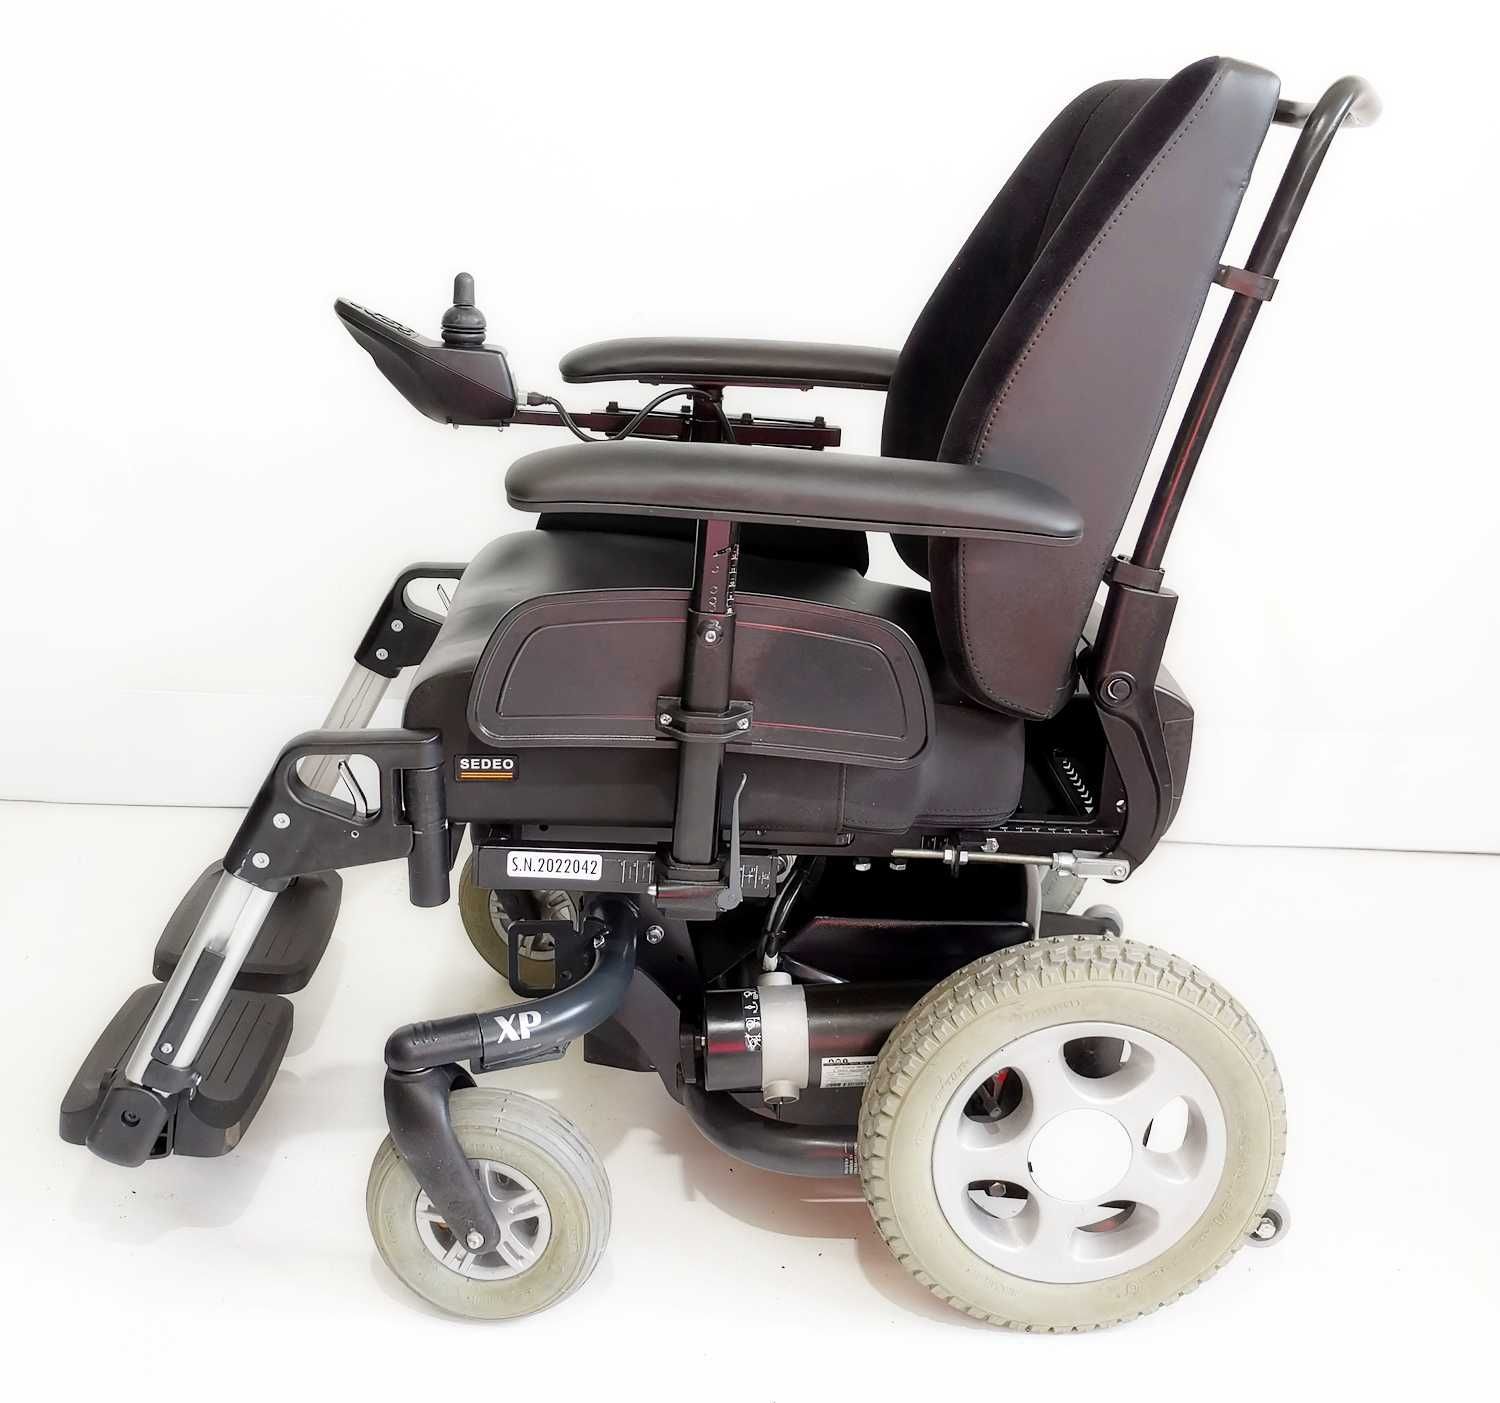 Wózek inwalidzki elektryczny PUMA XP terenowo-pokojowy fv